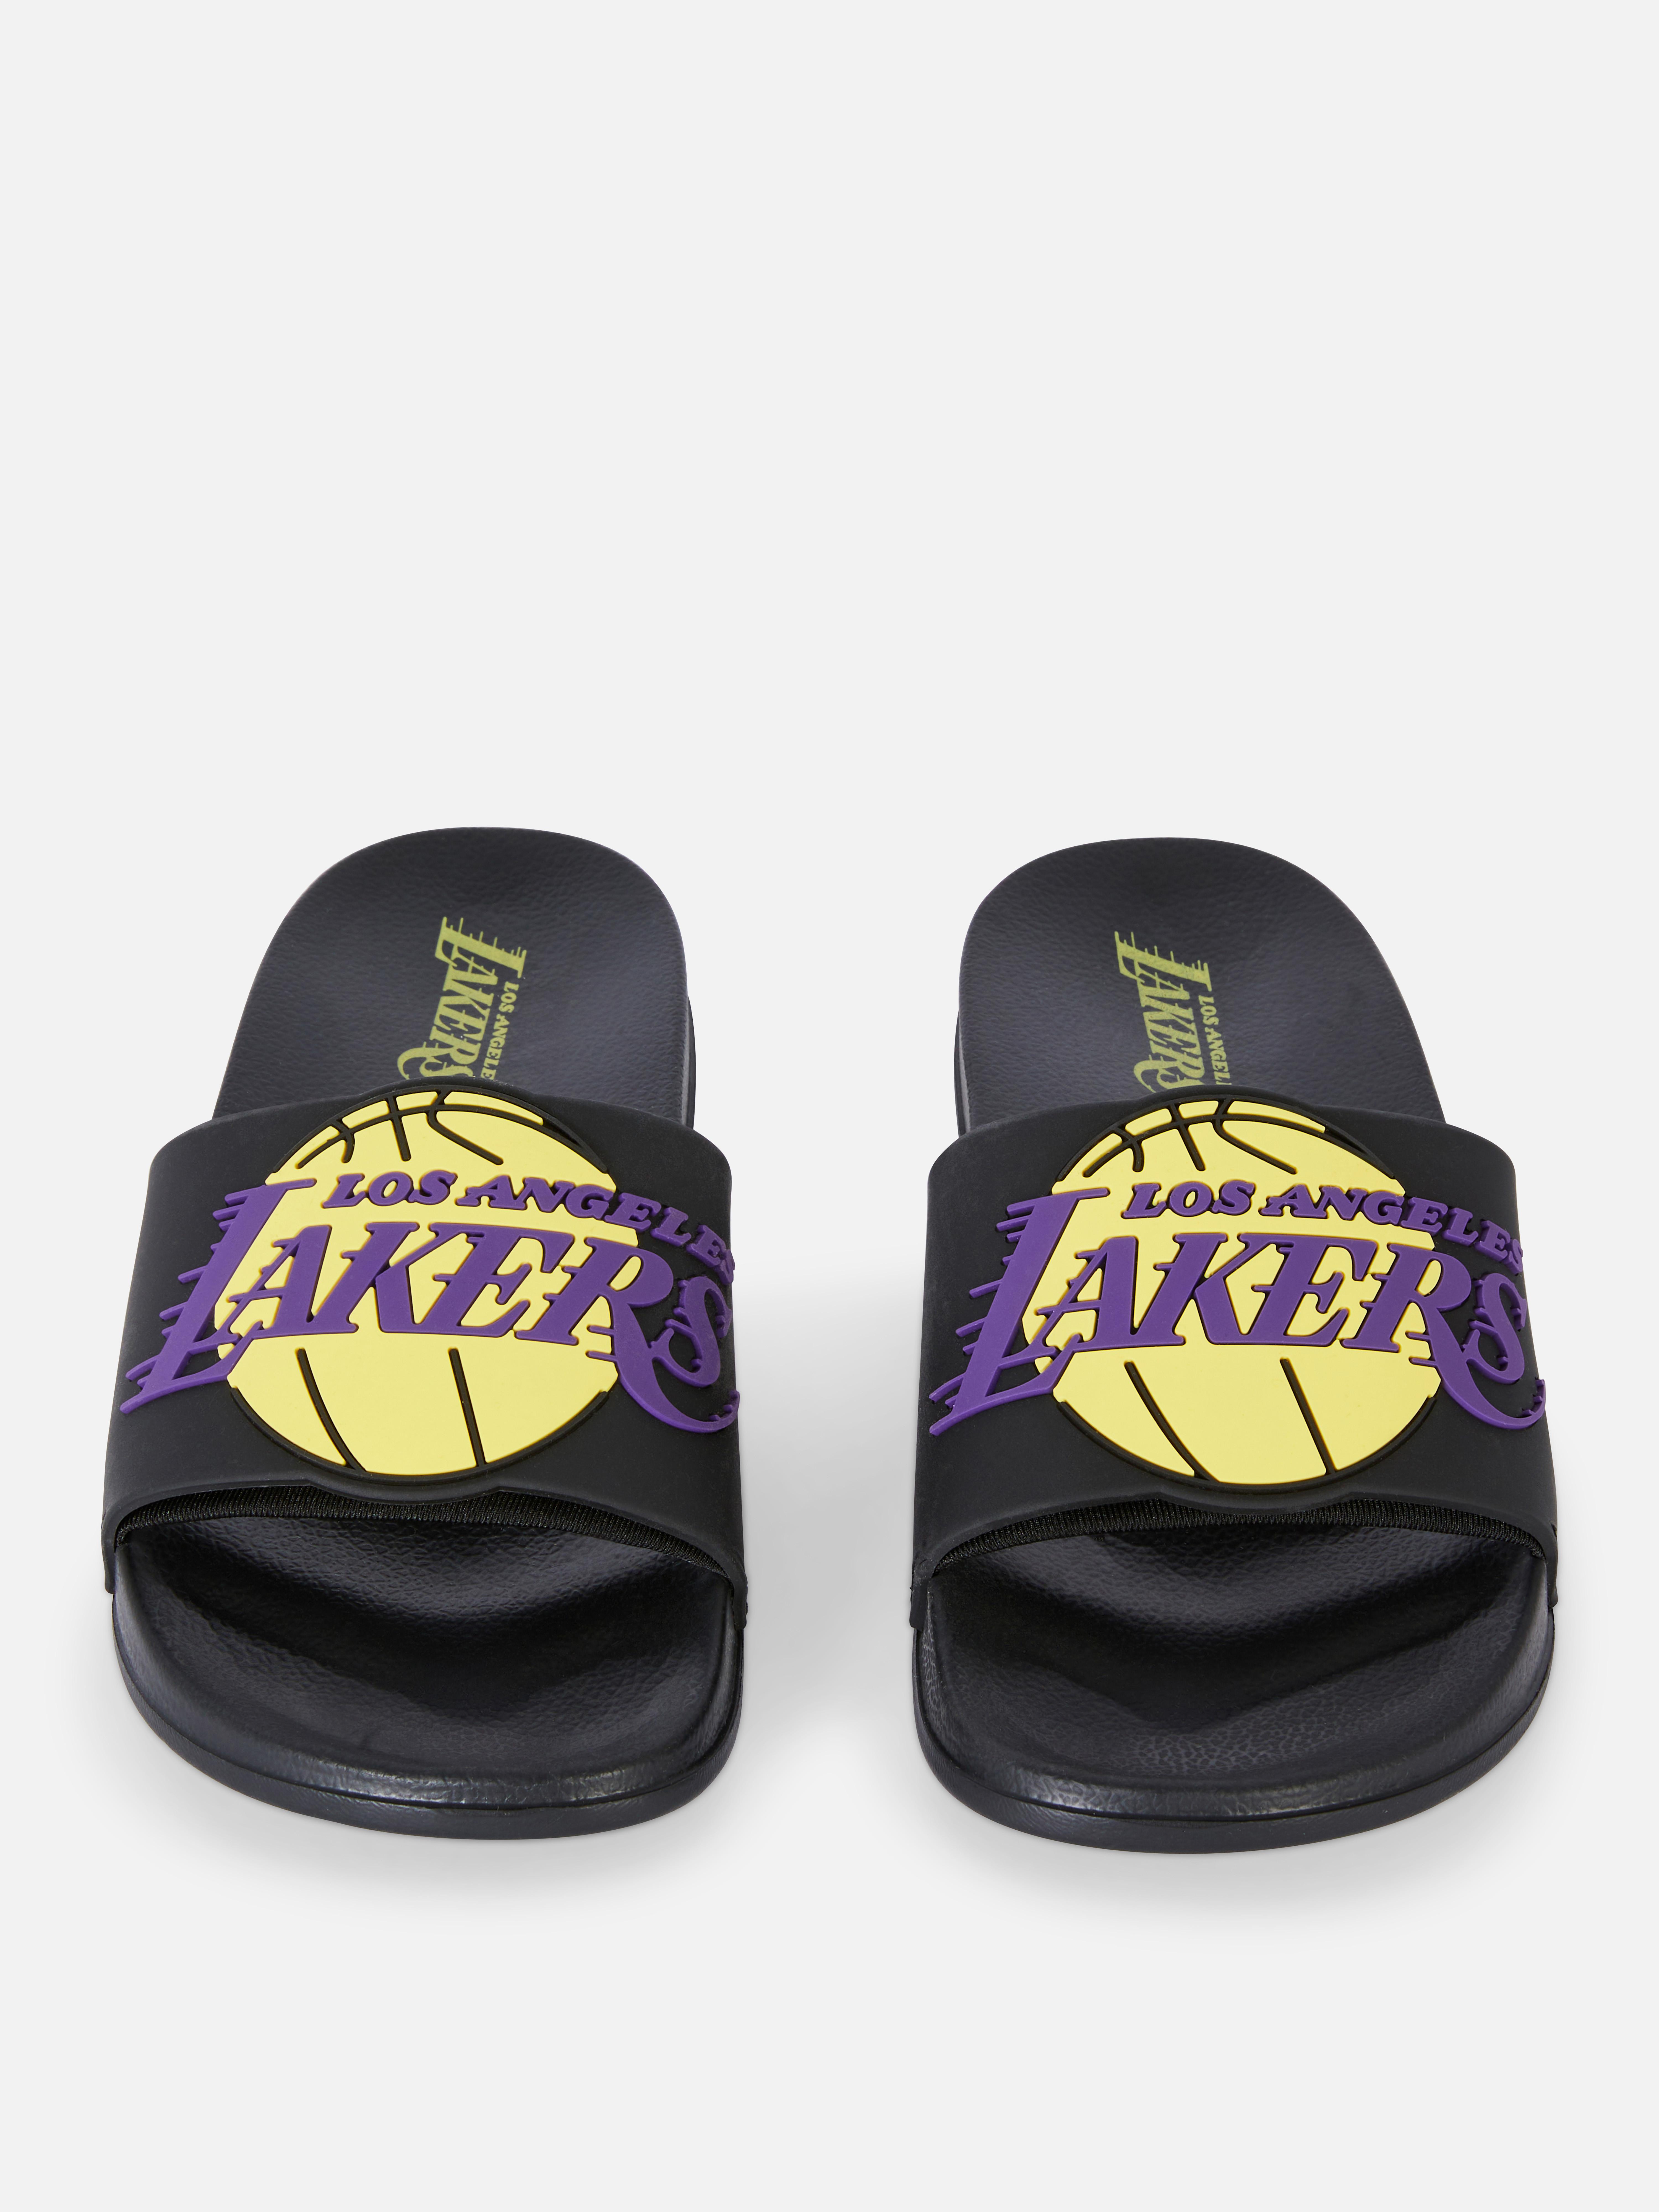 気質アップ Primark NBA Lakers Slides サンダル UK7 サンダル